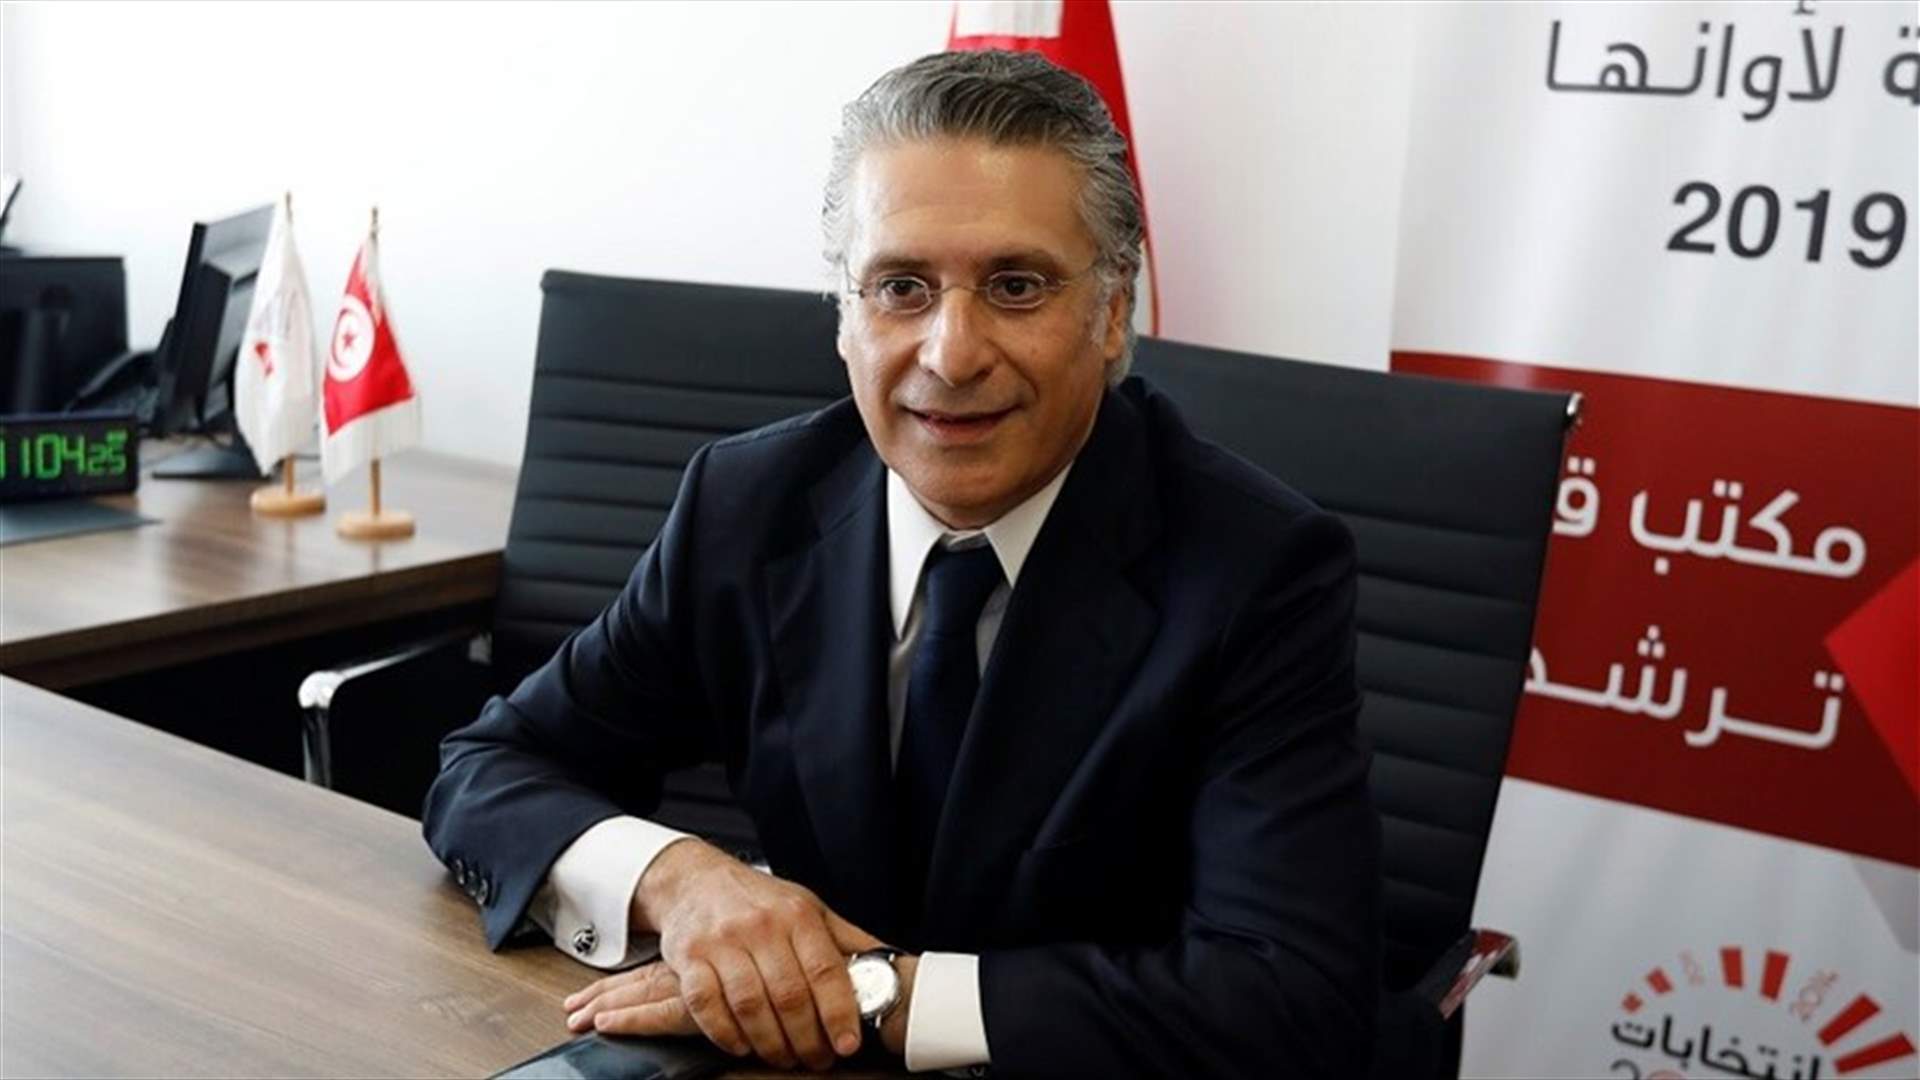 القضاء التونسي يرفض الافراج عن المرشح الرئاسي نبيل القروي